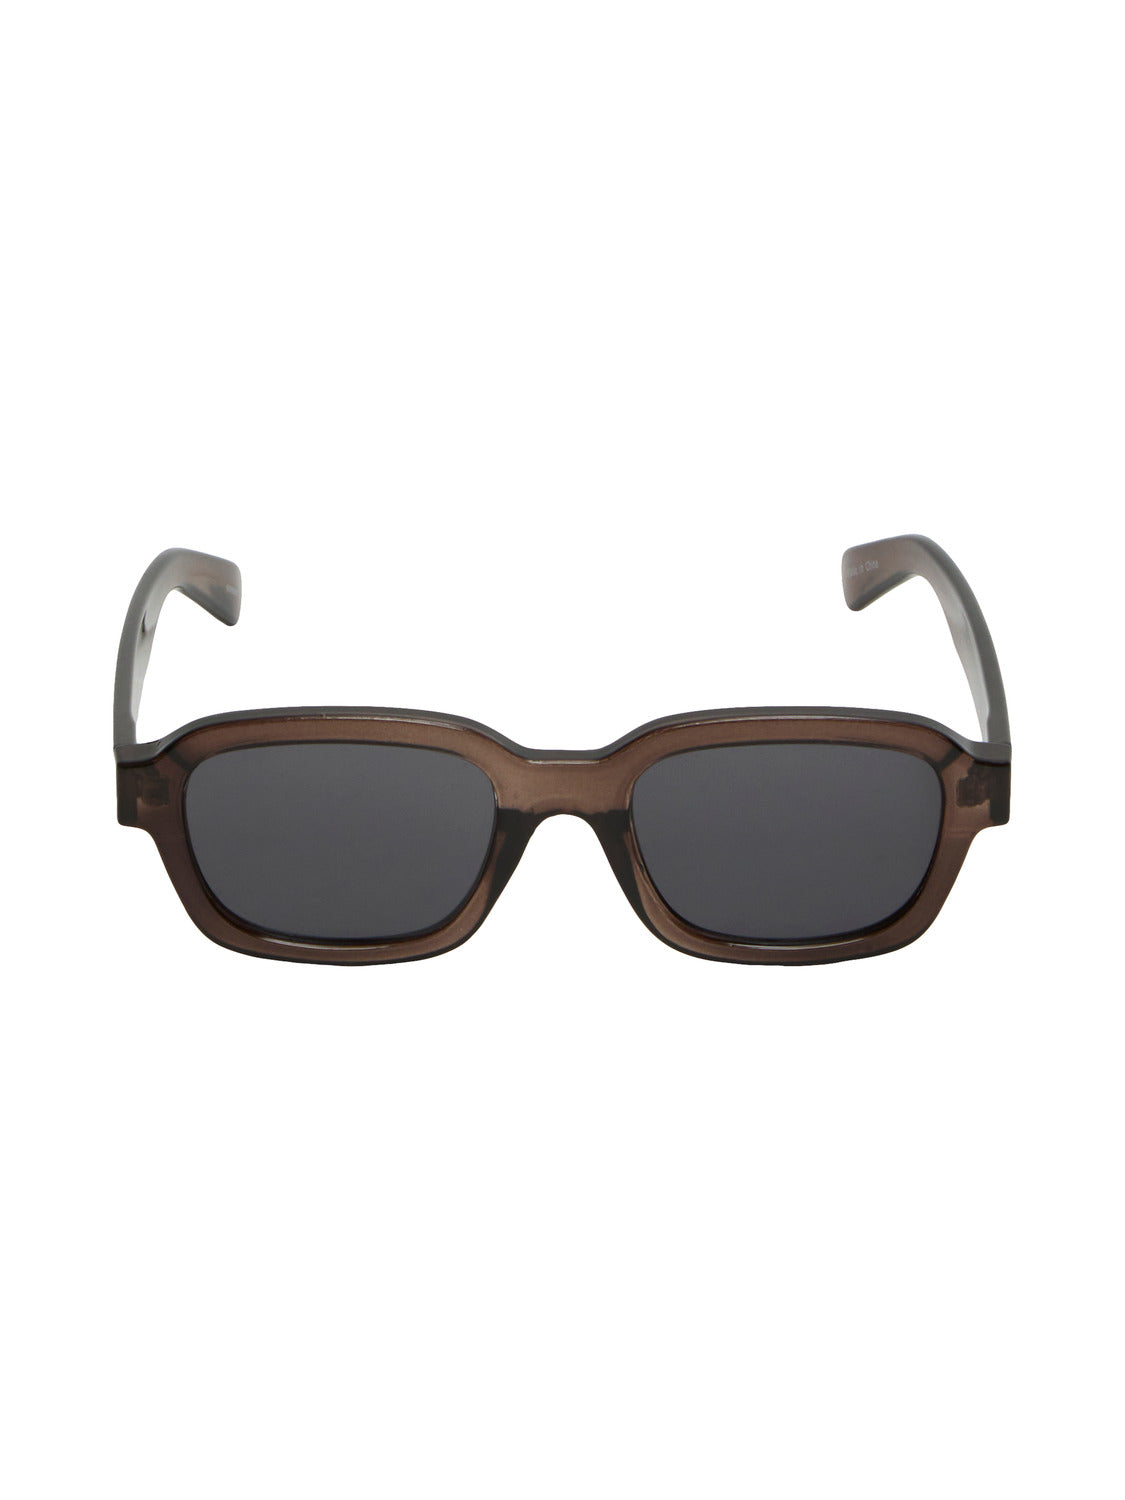 SLFARIA Sunglasses - Grey